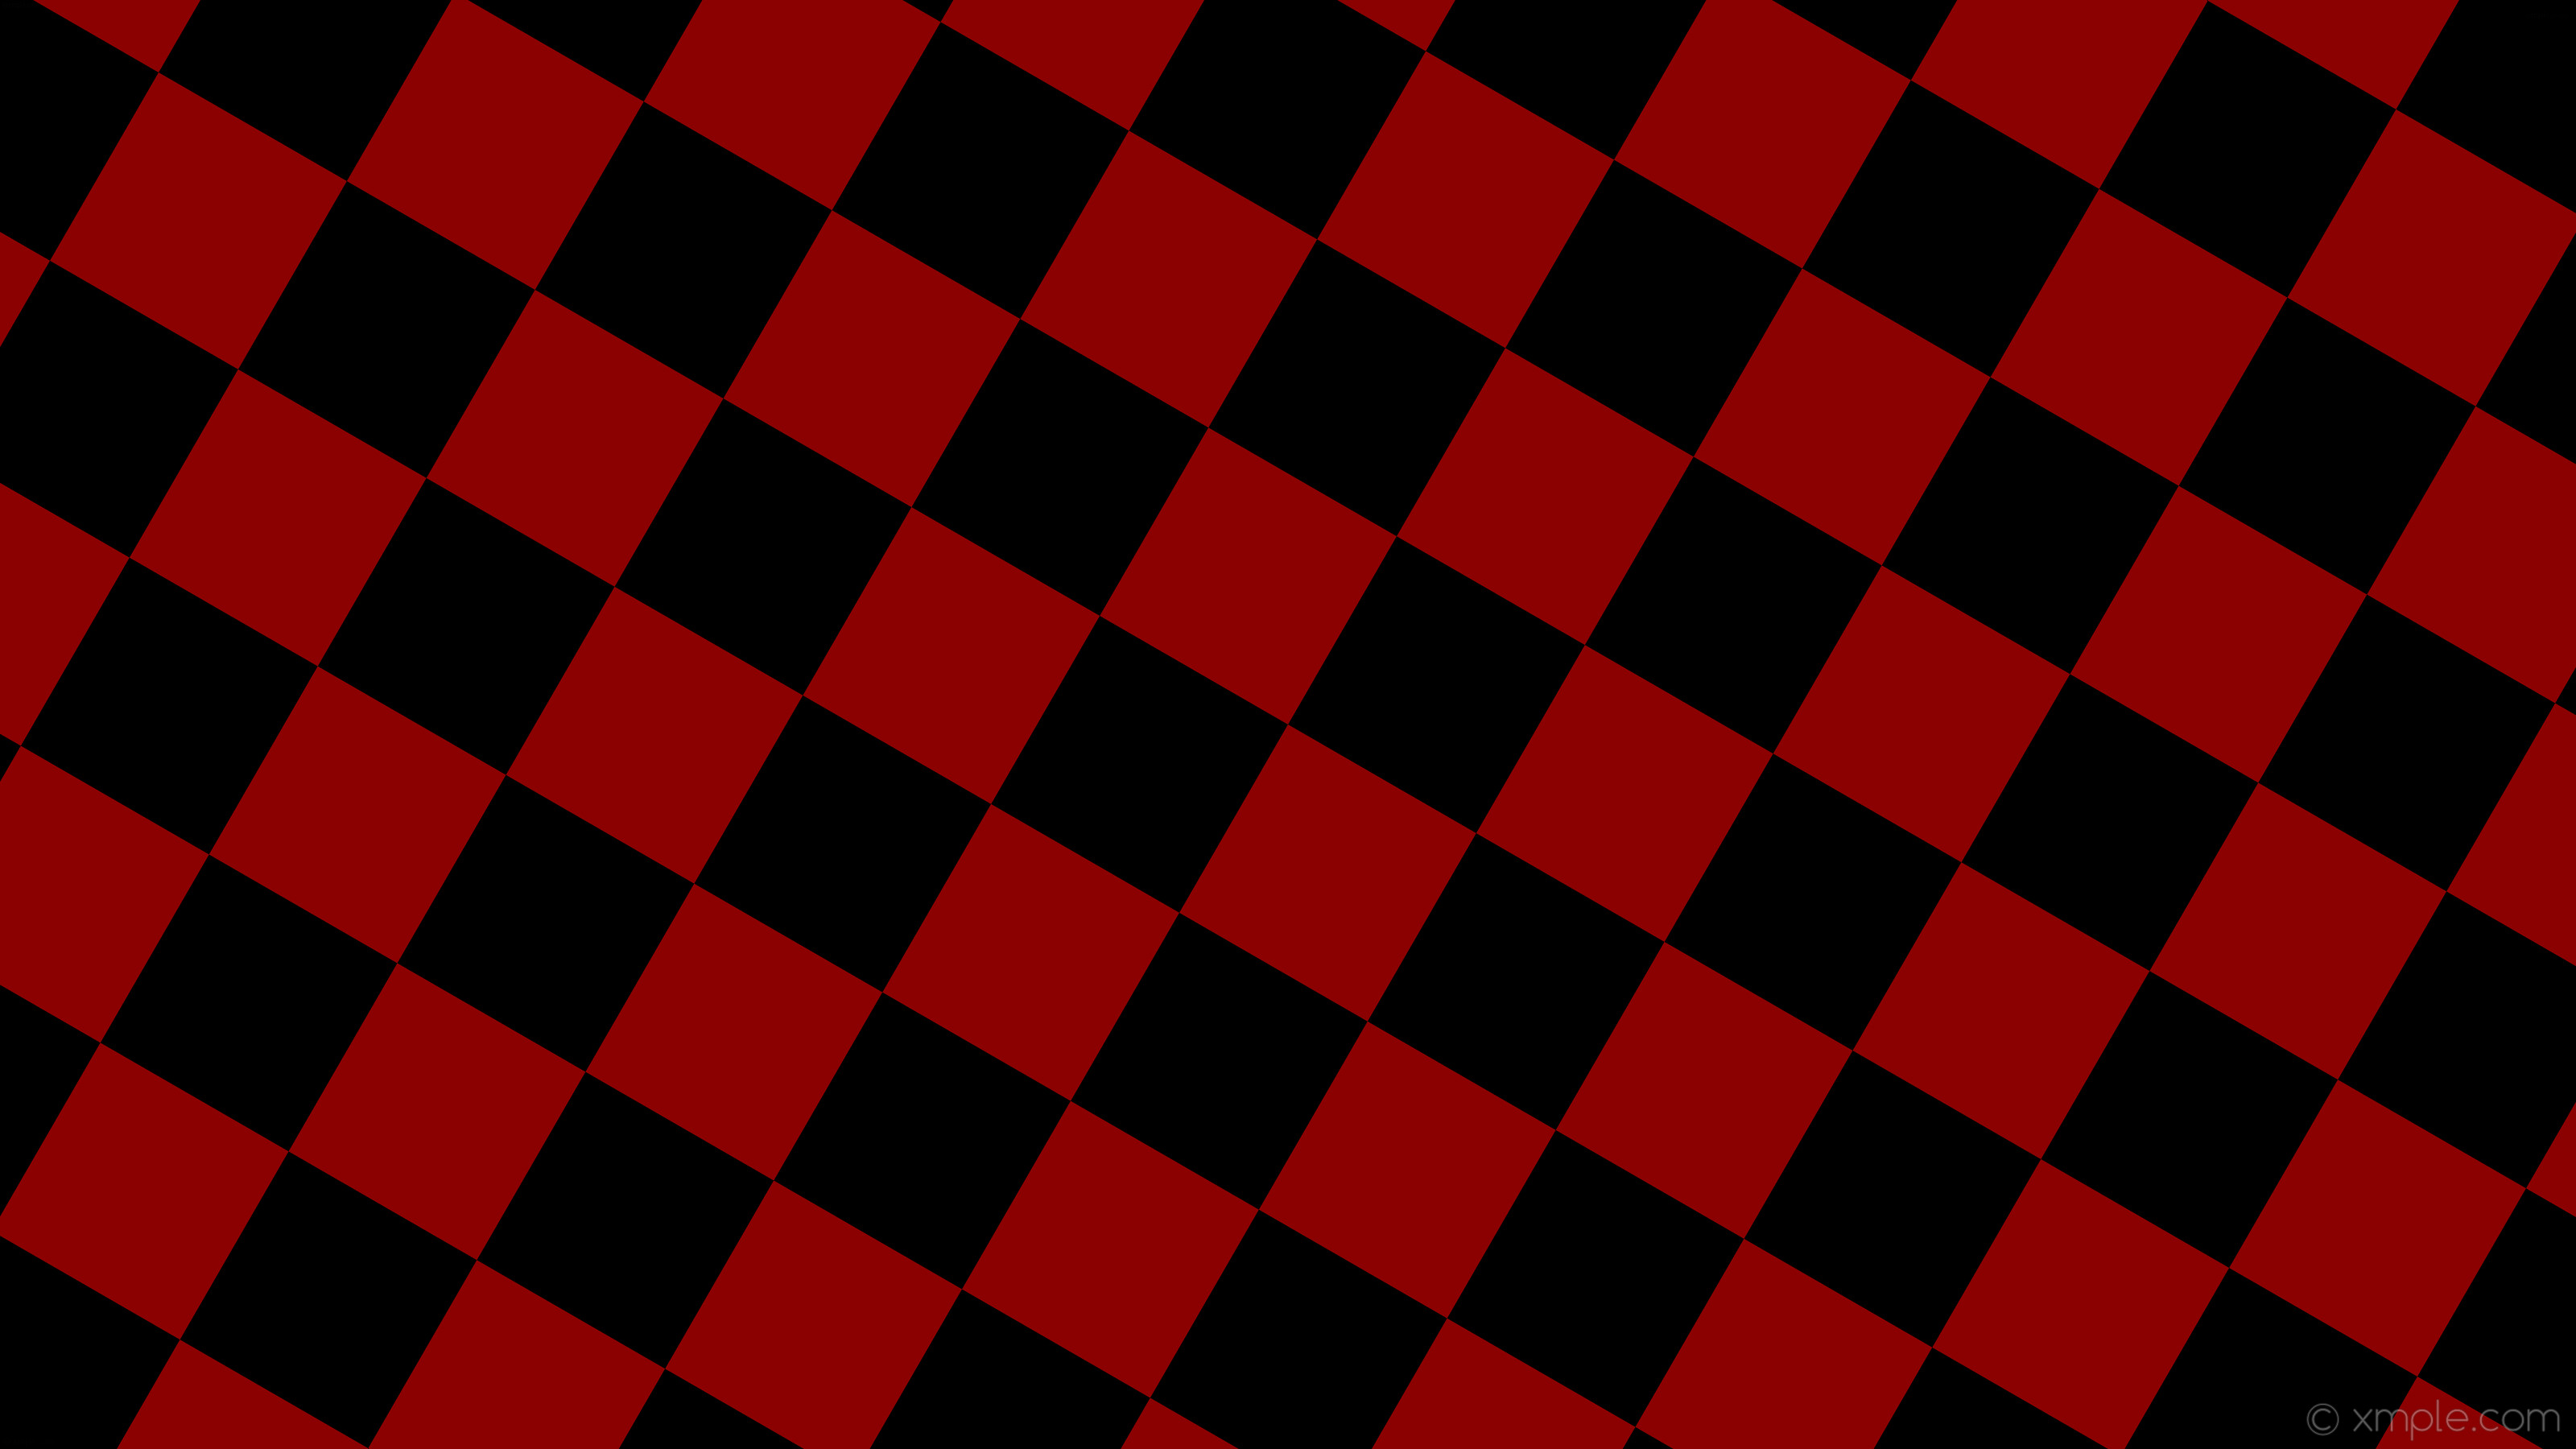 Schwarz rot. Красно черная клетка фон. Черно красная клетка. Красный фон квадрат. Красный квадратик.